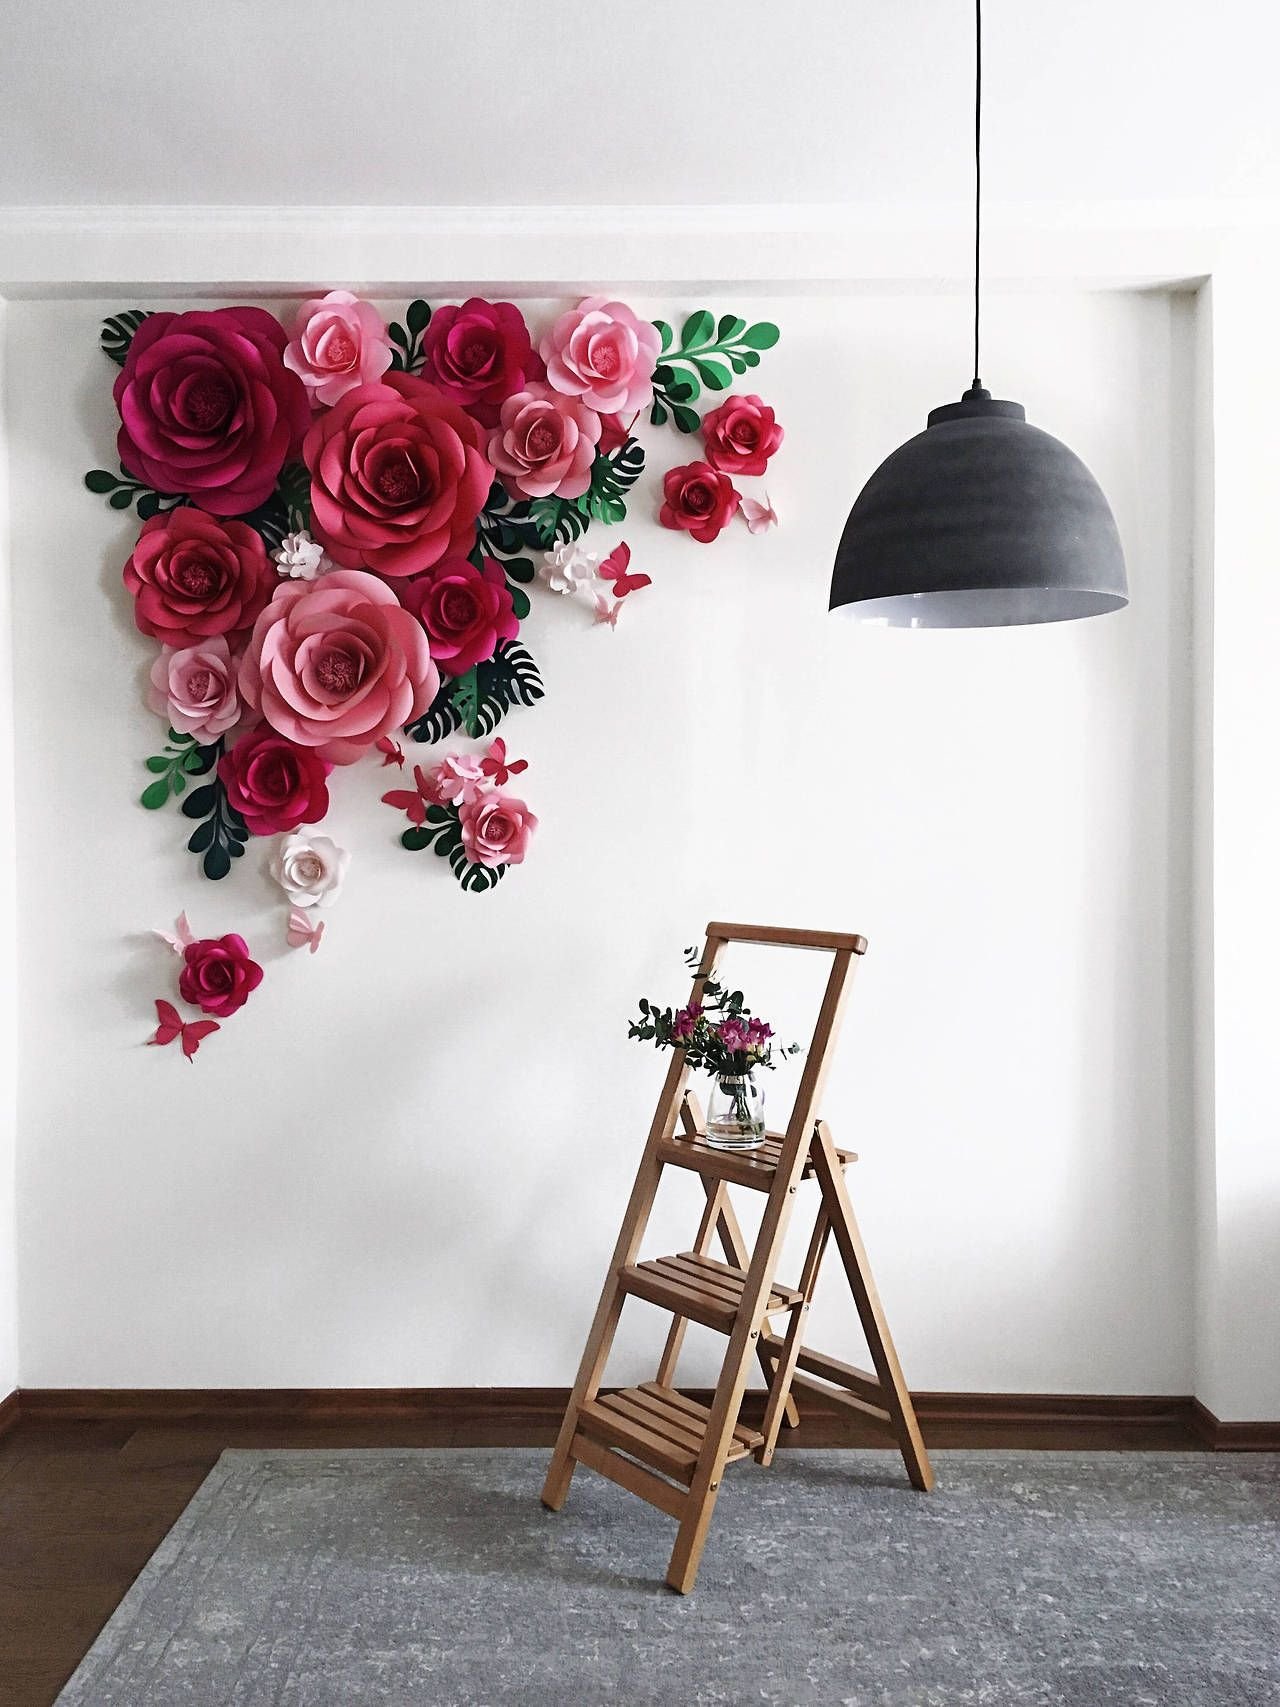 Рисунок цветов на стене в интерьере, на наклейках, фотообоях и панно (16 фото)